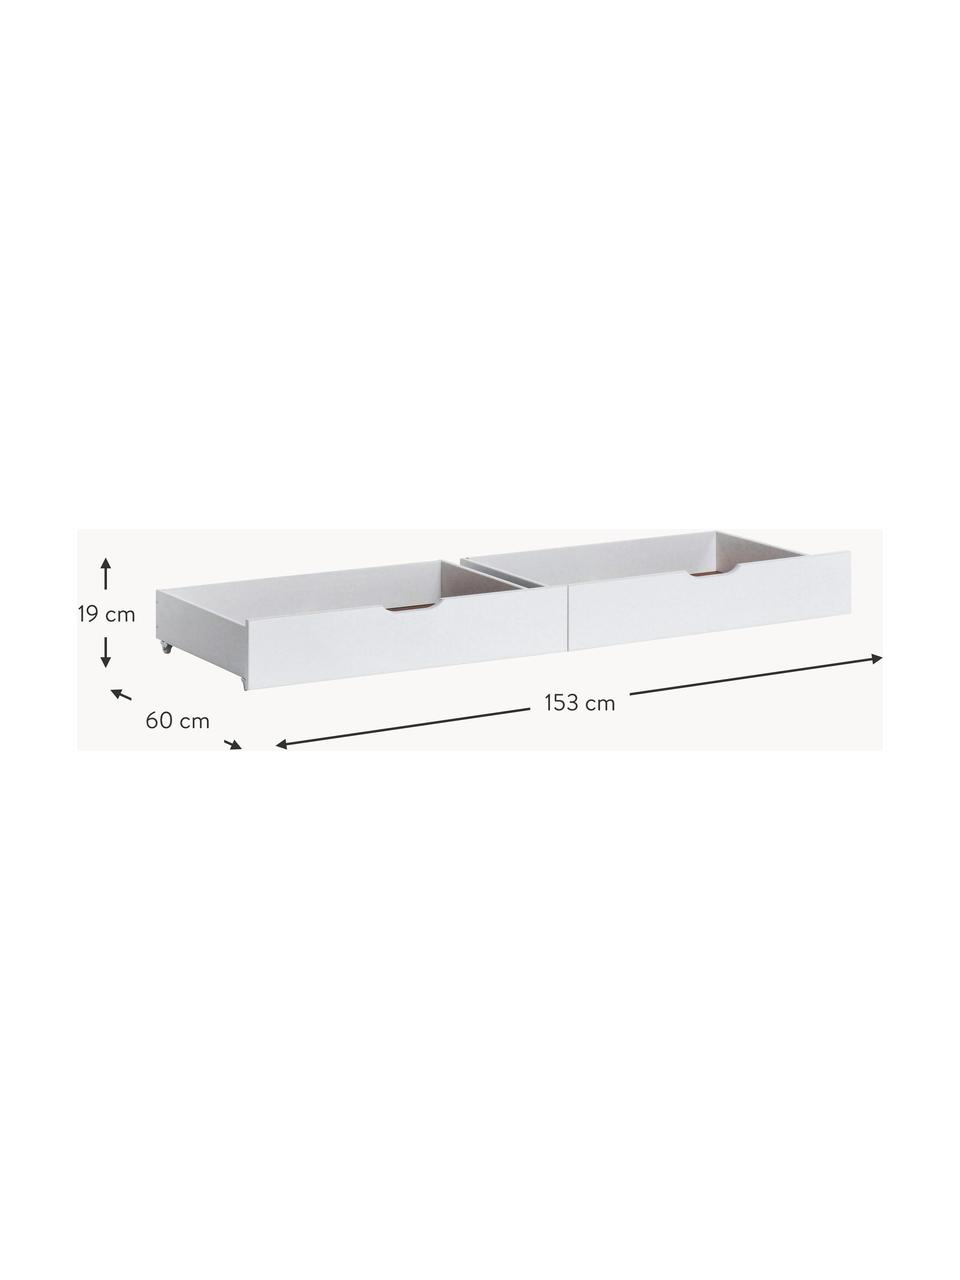 Bettschubladen Eco Comfort, 2 Stück, Mitteldichte Holzfaserplatte (MDF), FSC-zertifiziert, Holz, weiss lackiert, B 153 x T 60 cm